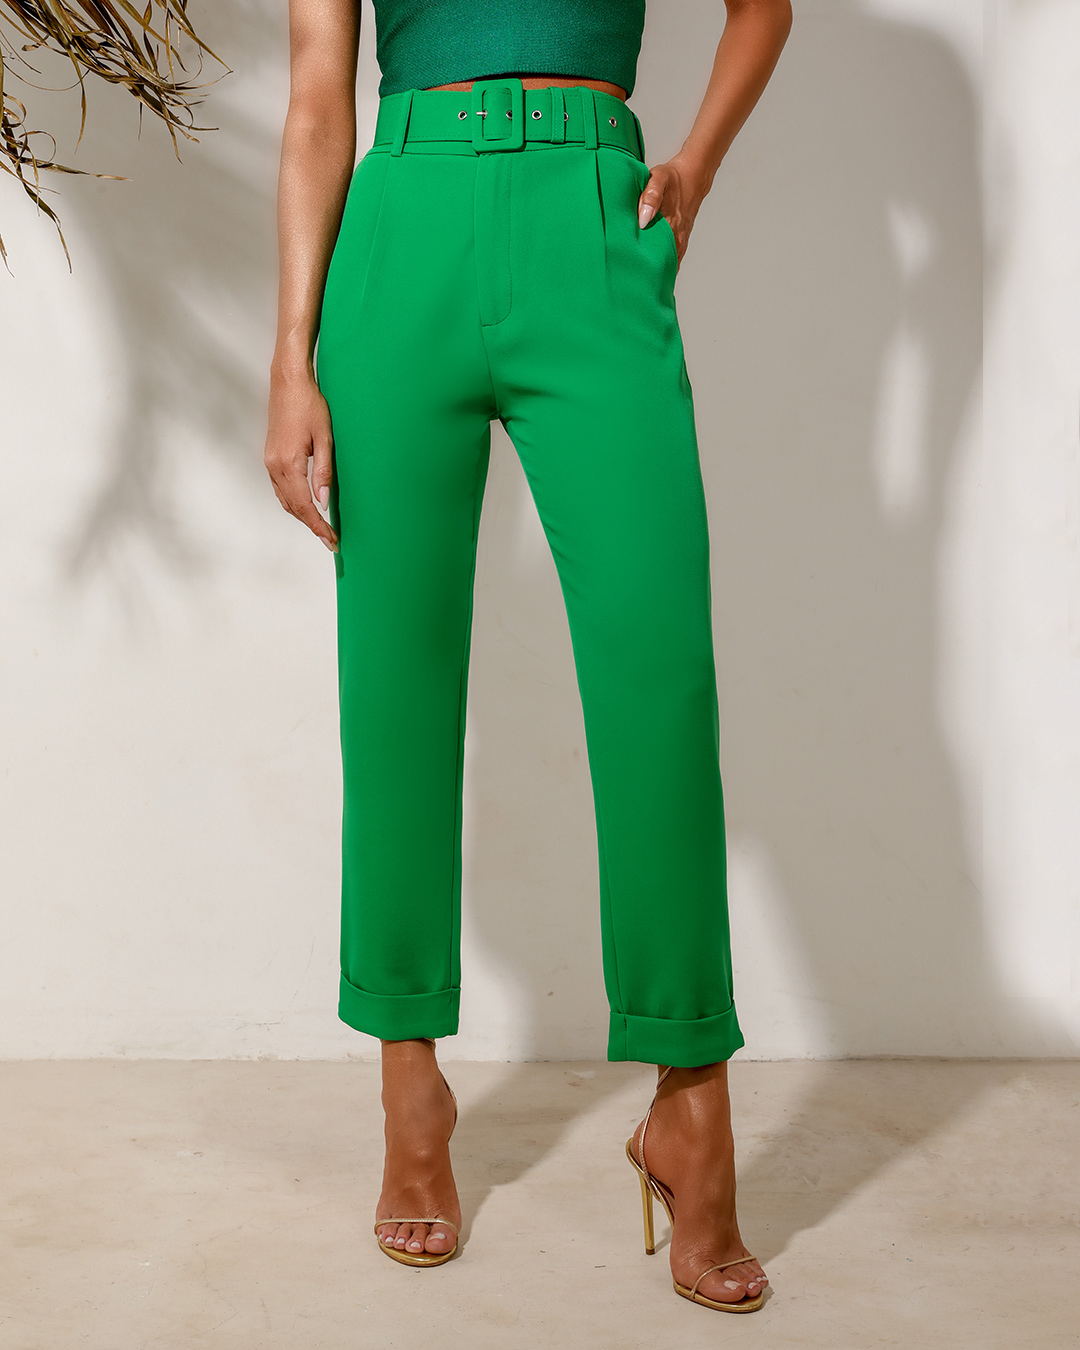 Dot Clothing - Calça Dot Clothing Alfaiataria Cintura Alta com Cinto Verde - 1250VERDE